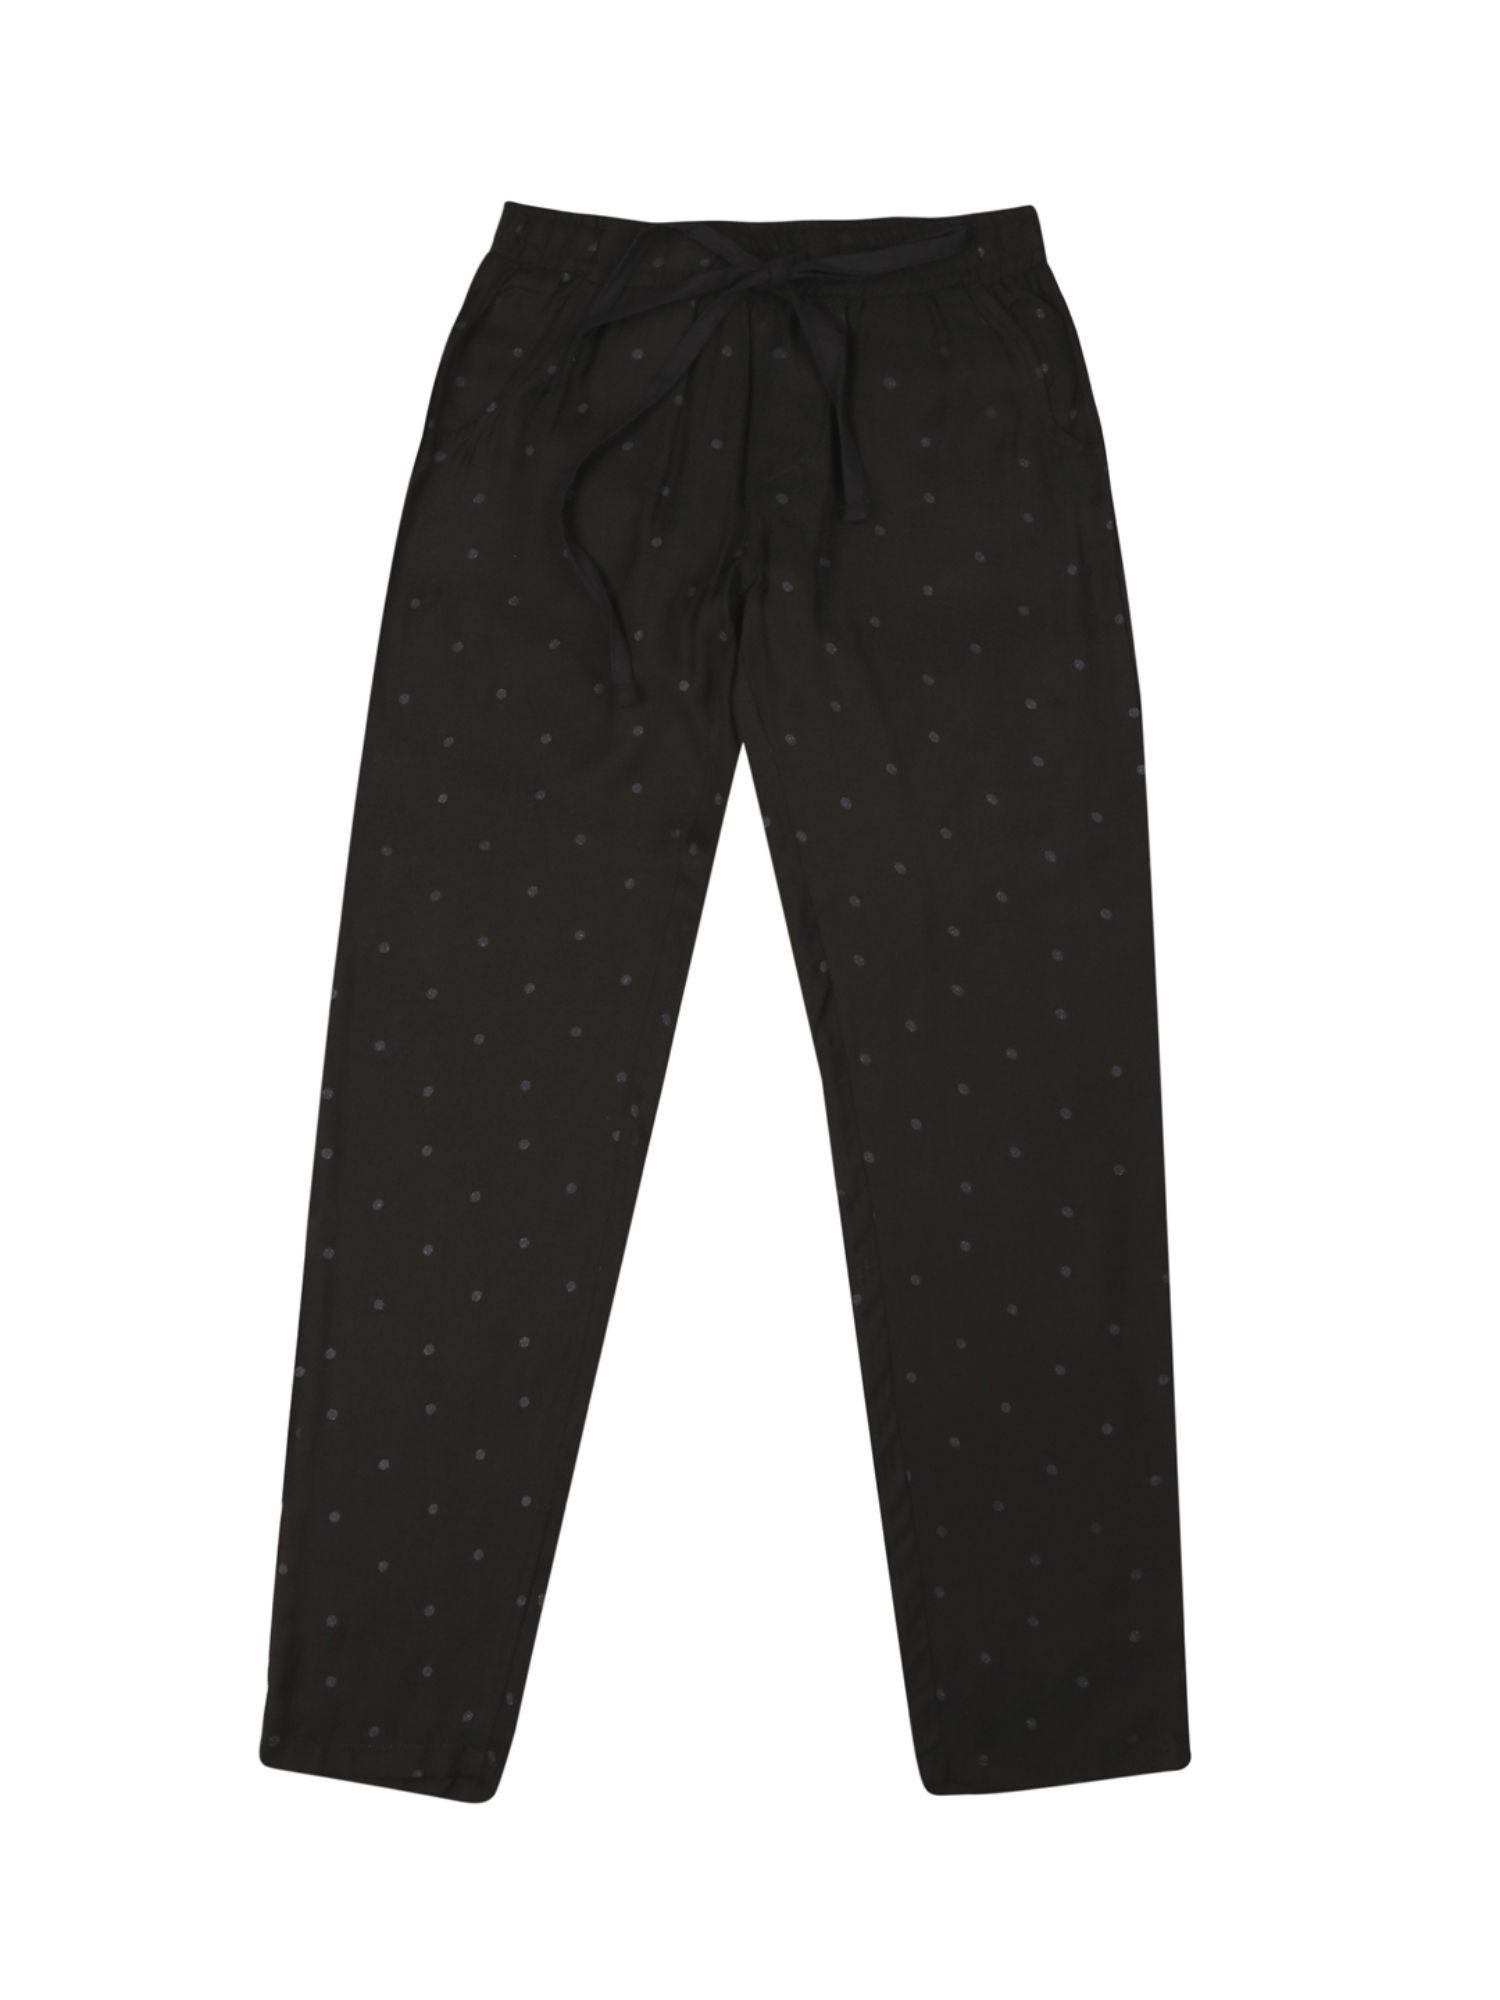 girls black cotton polka dot elasticated trouser